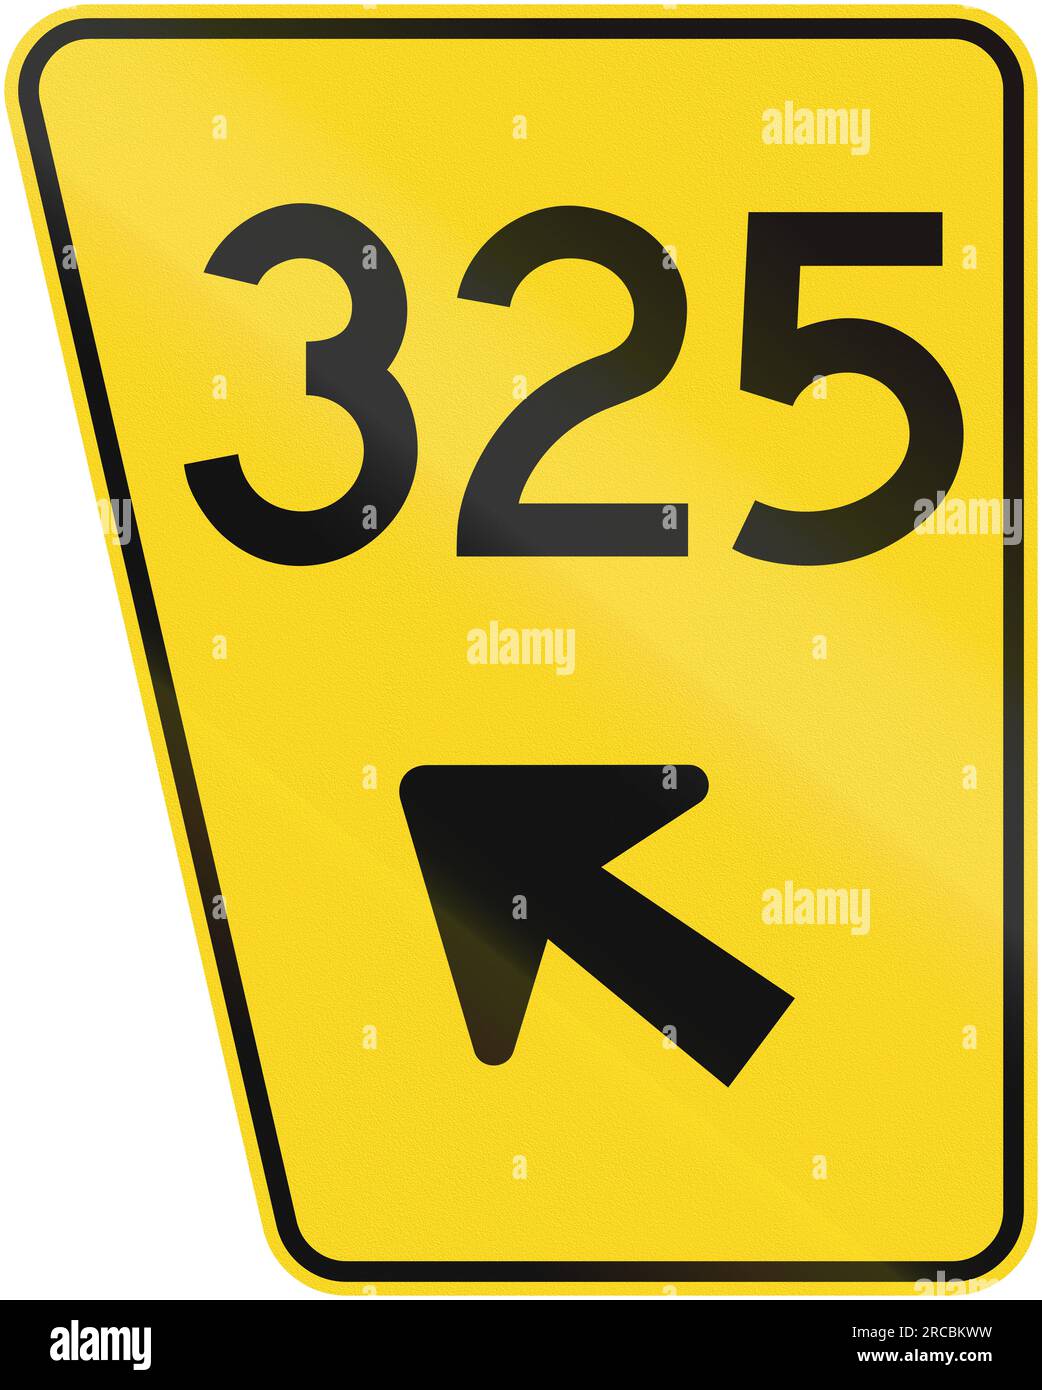 Guida e informazioni indicazioni stradali per Quebec, Canada - numero della strada di uscita sulla sinistra. Foto Stock